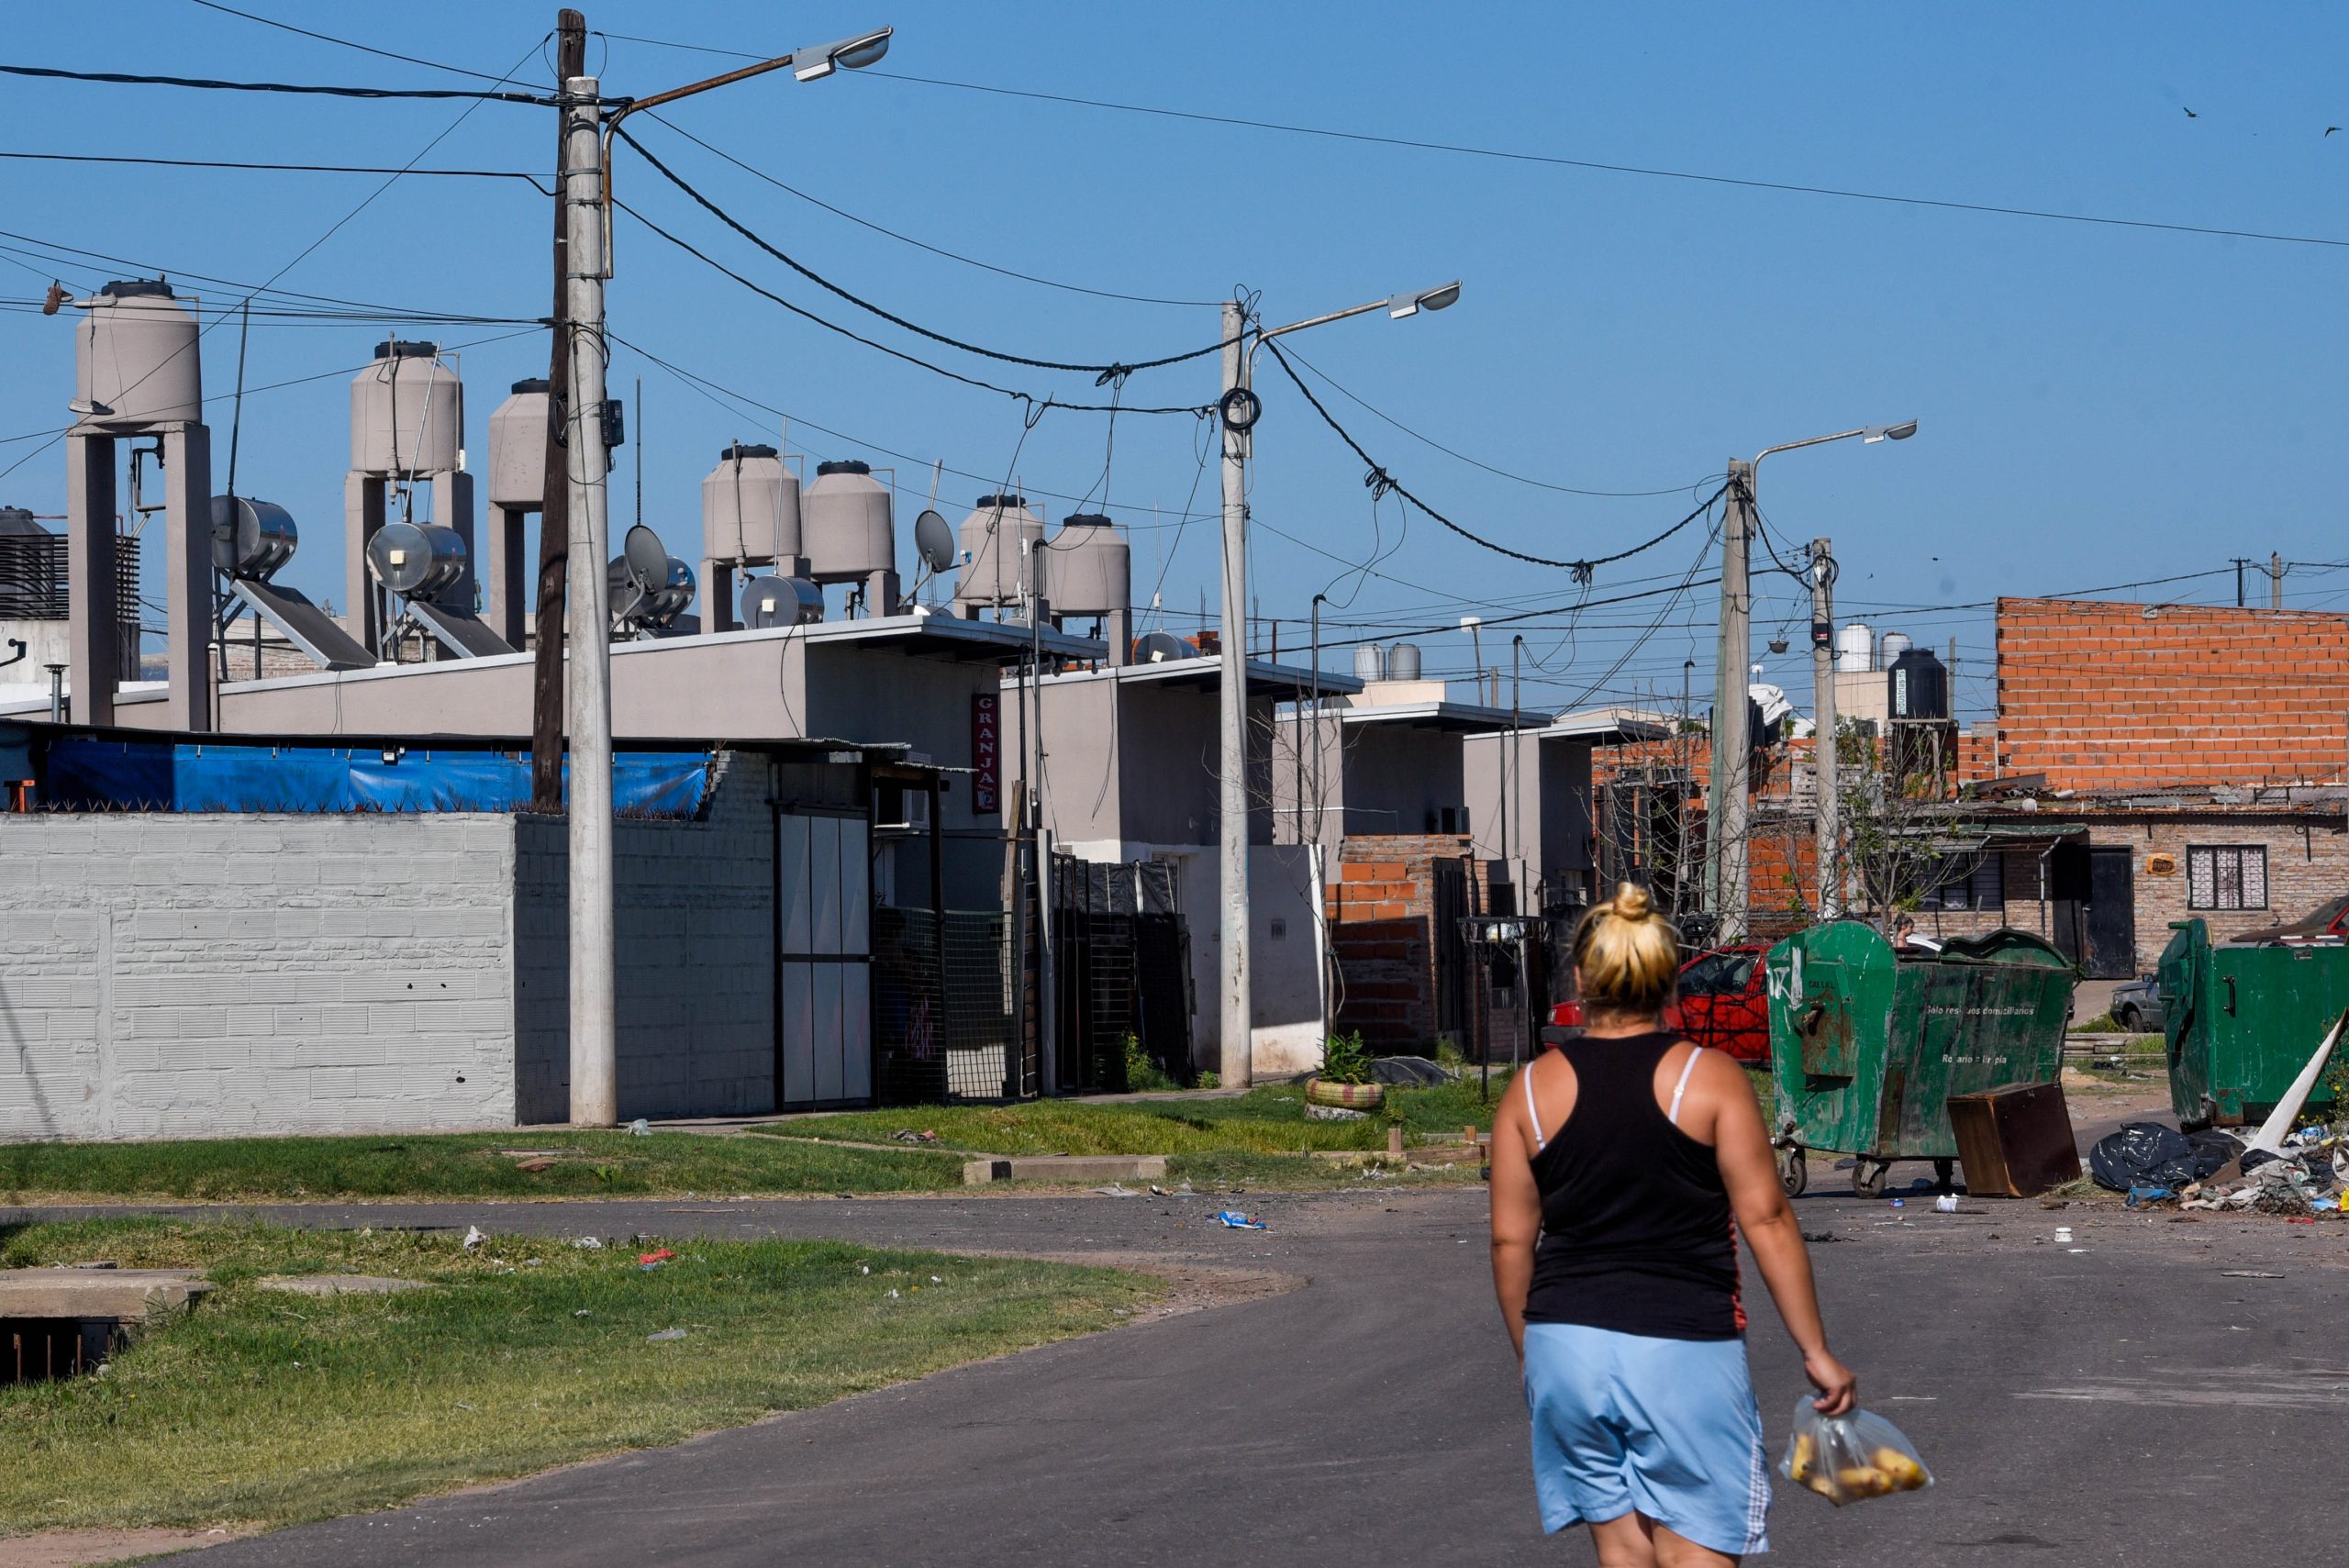 Mulher caminha pelo bairro Godoy, em Rosario, na Argentina. No fundo, casas com aquecedores solares no teto.